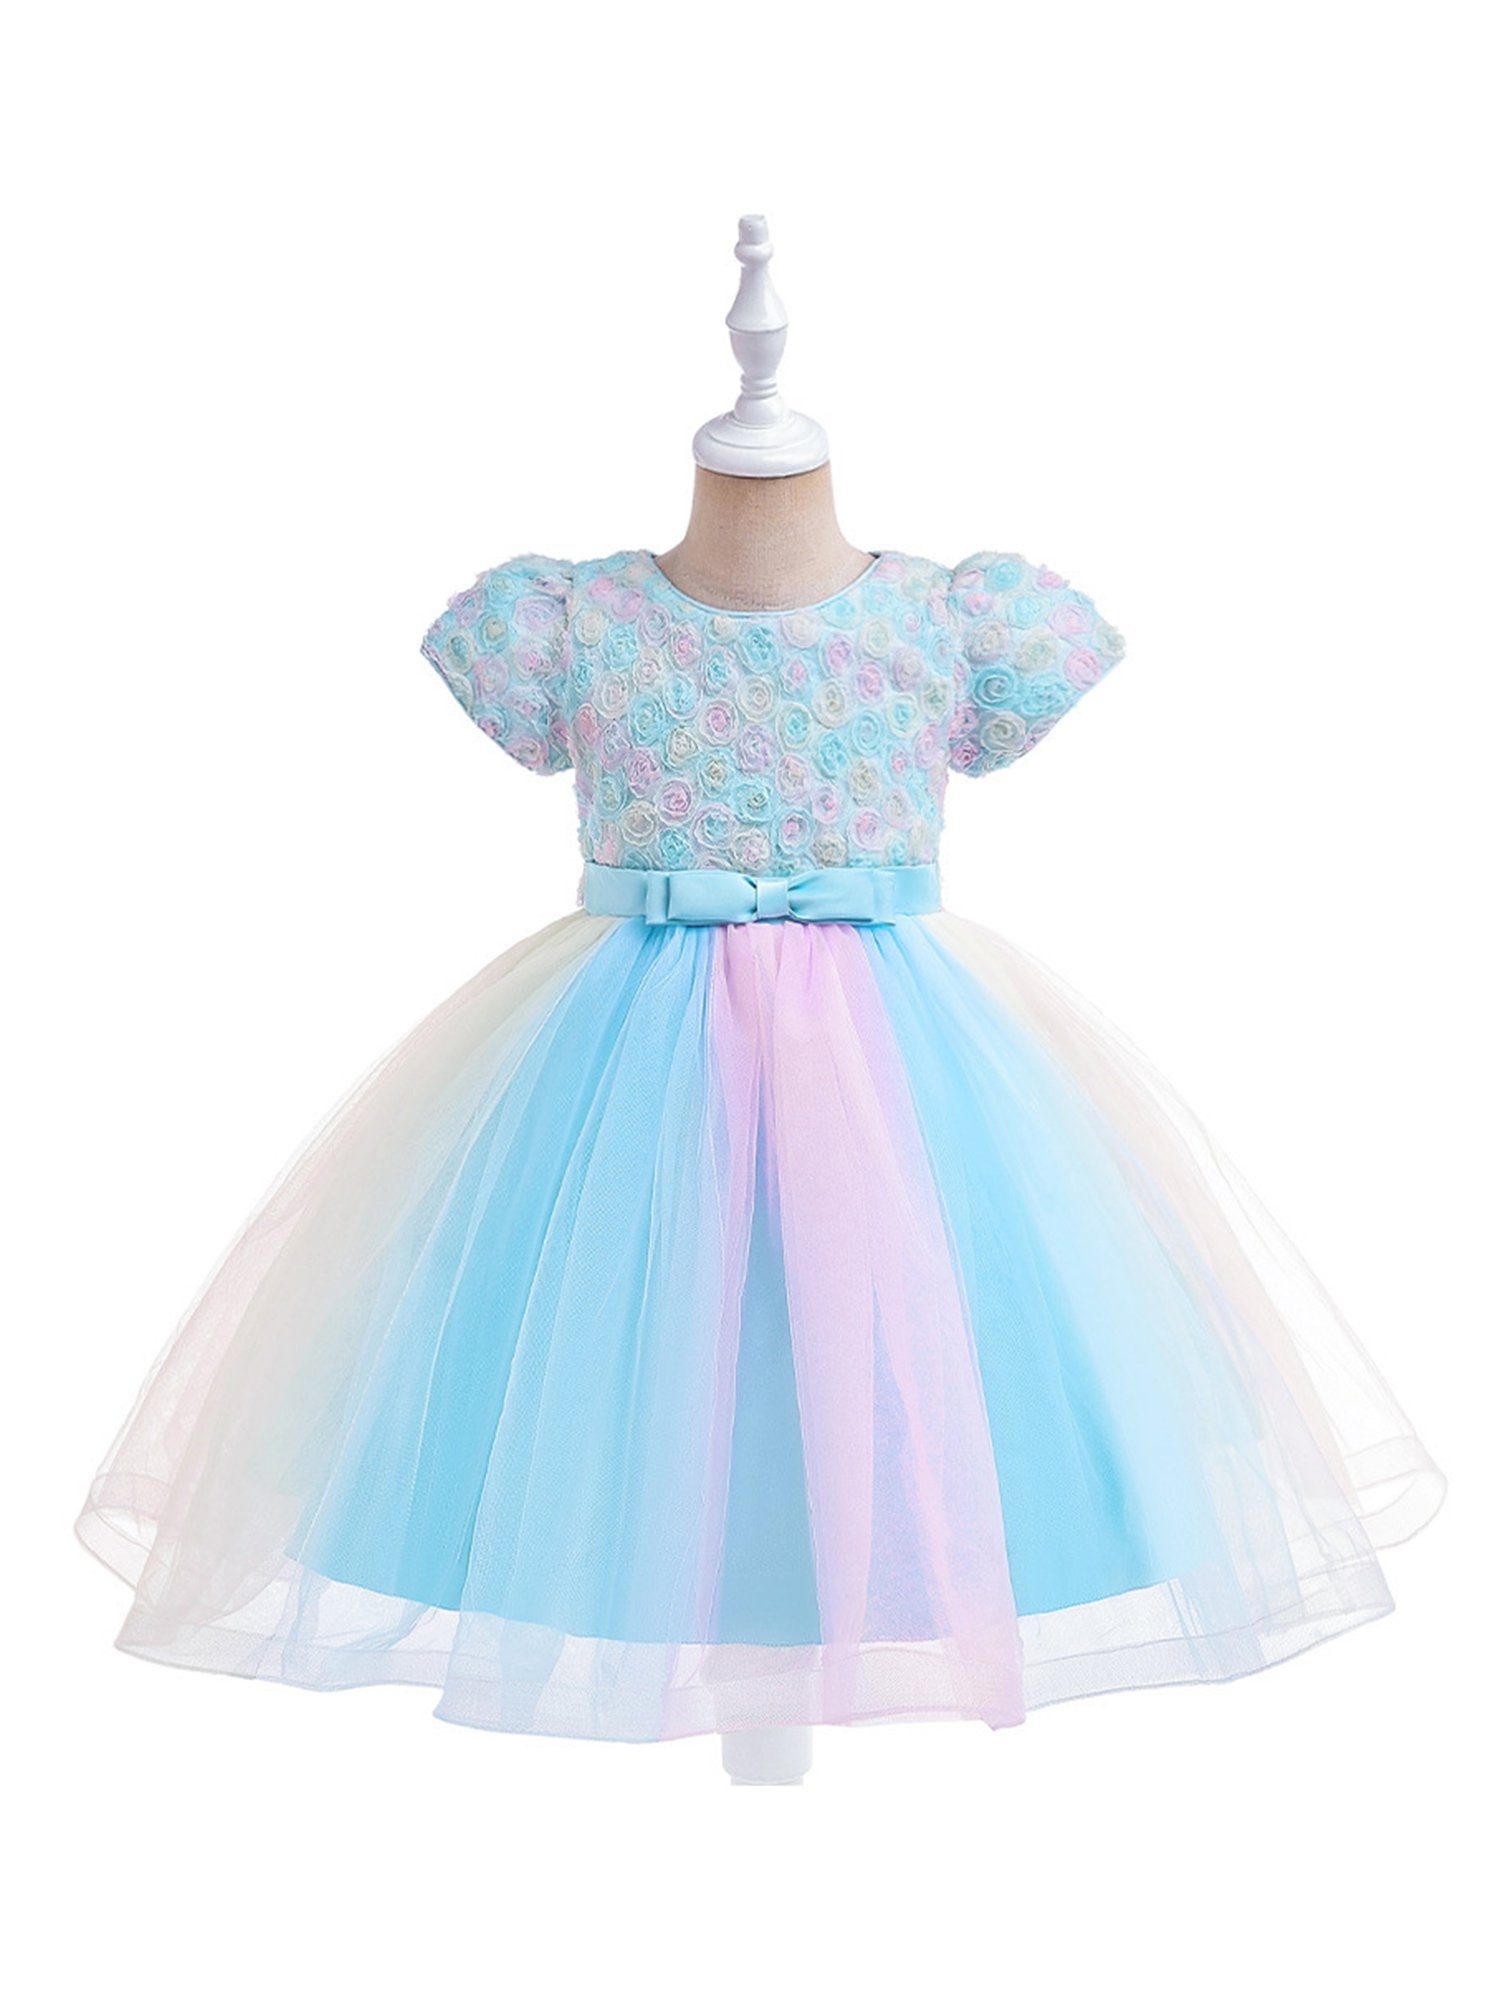 LAPA Abendkleid Mädchen Prinzessinnenkleid aus Tüll mit dreidimensionalen Netzblumen Blau